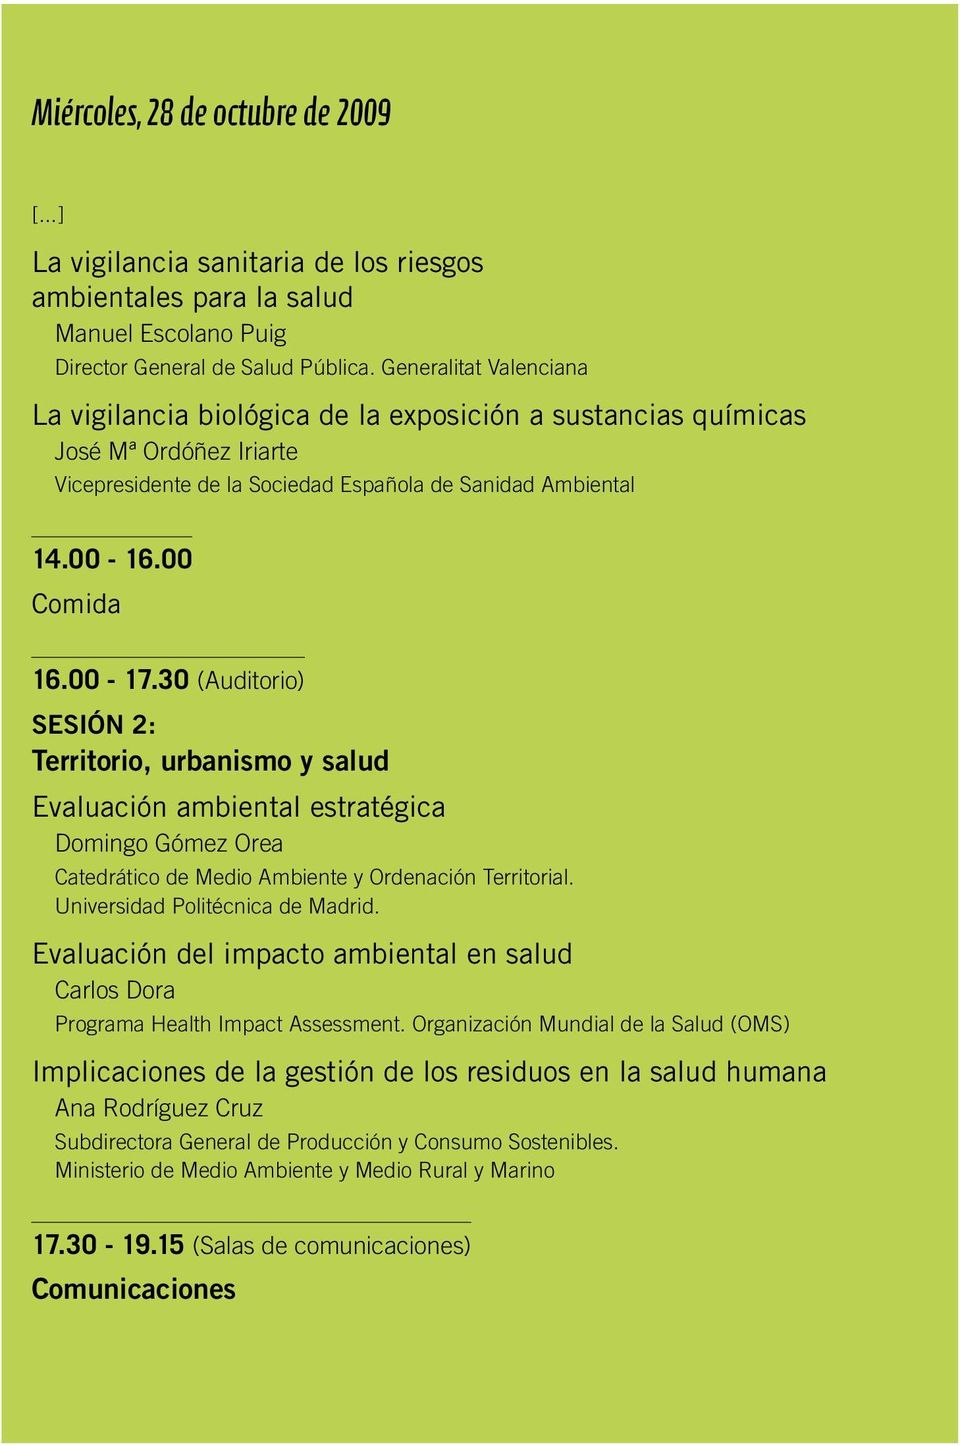 30 Sesión 2: Territorio, urbanismo y salud Evaluación ambiental estratégica Domingo Gómez Orea Catedrático de Medio Ambiente y Ordenación Territorial. Universidad Politécnica de Madrid.